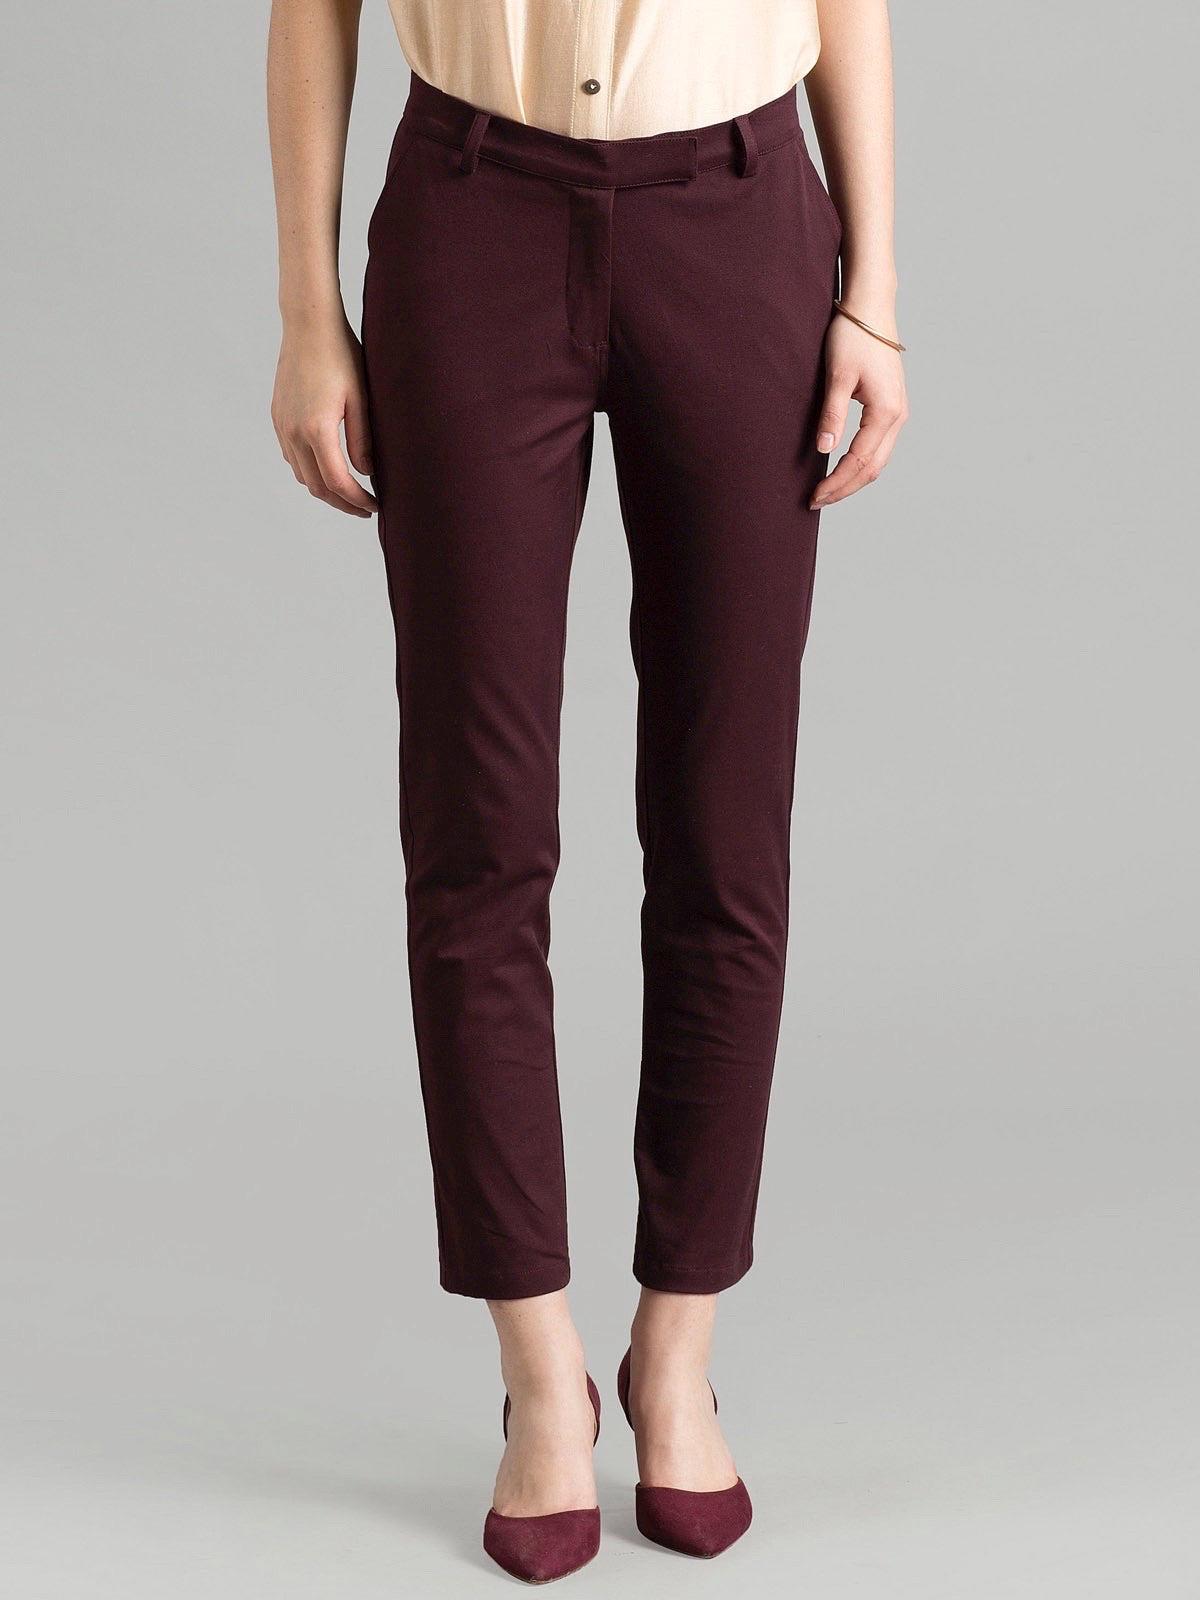 Essential Comfort Crop Pants - Maroon| Formal Trousers